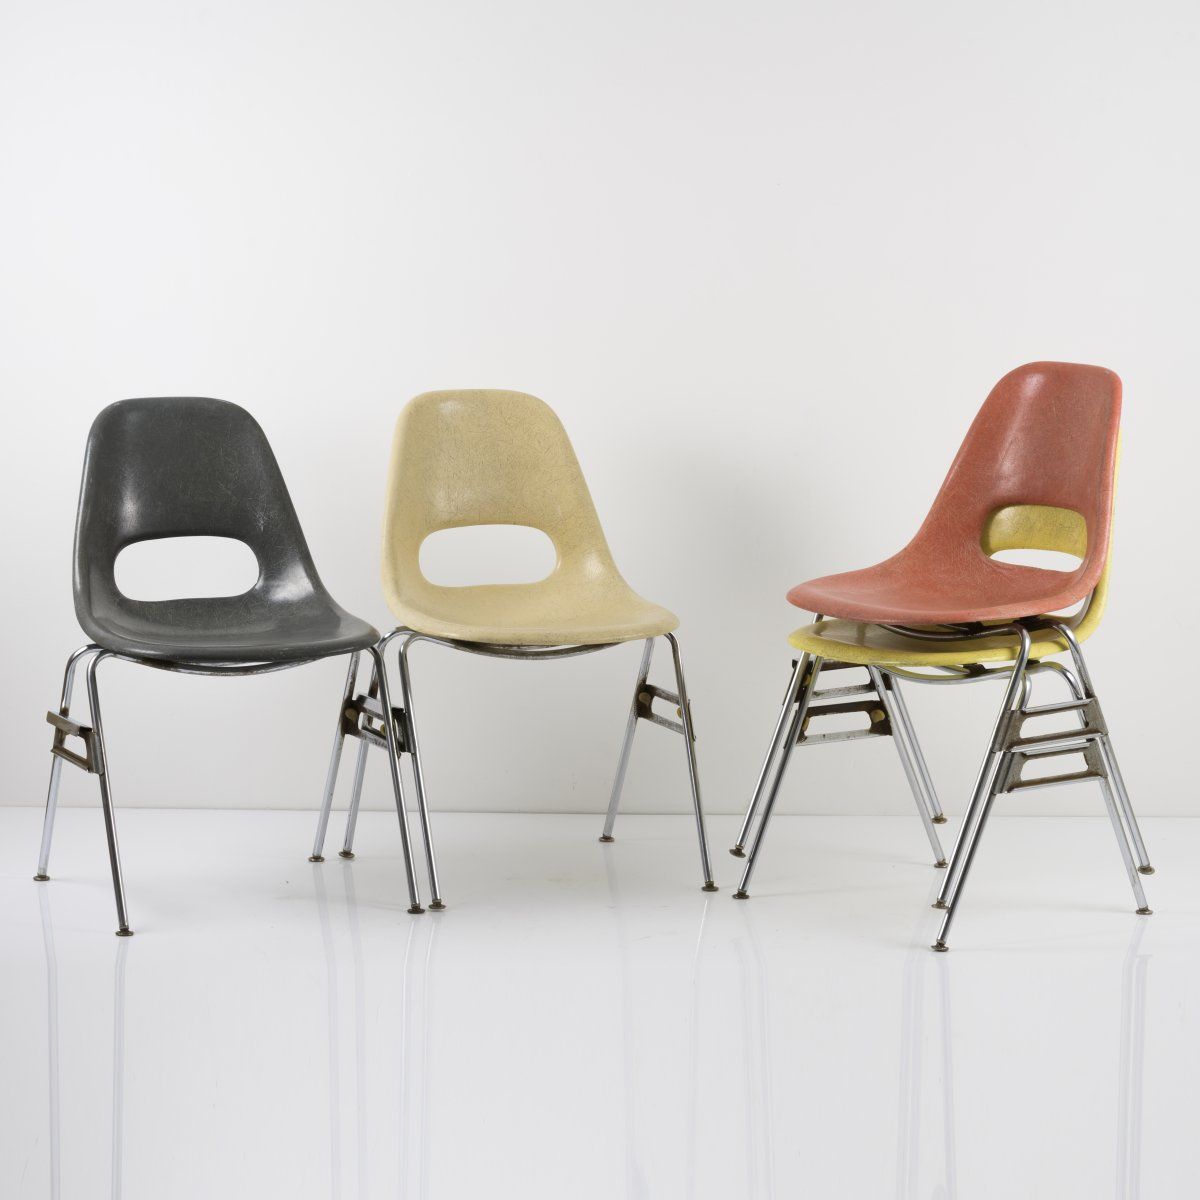 Null 克鲁格金属制品公司，威斯康星州绿湾，4把堆叠椅，约1952年，高81 x 56 x 53厘米。管状金属，镀铬，塑料，用玻璃纤维加固，红色，黄色，灰色和&hellip;